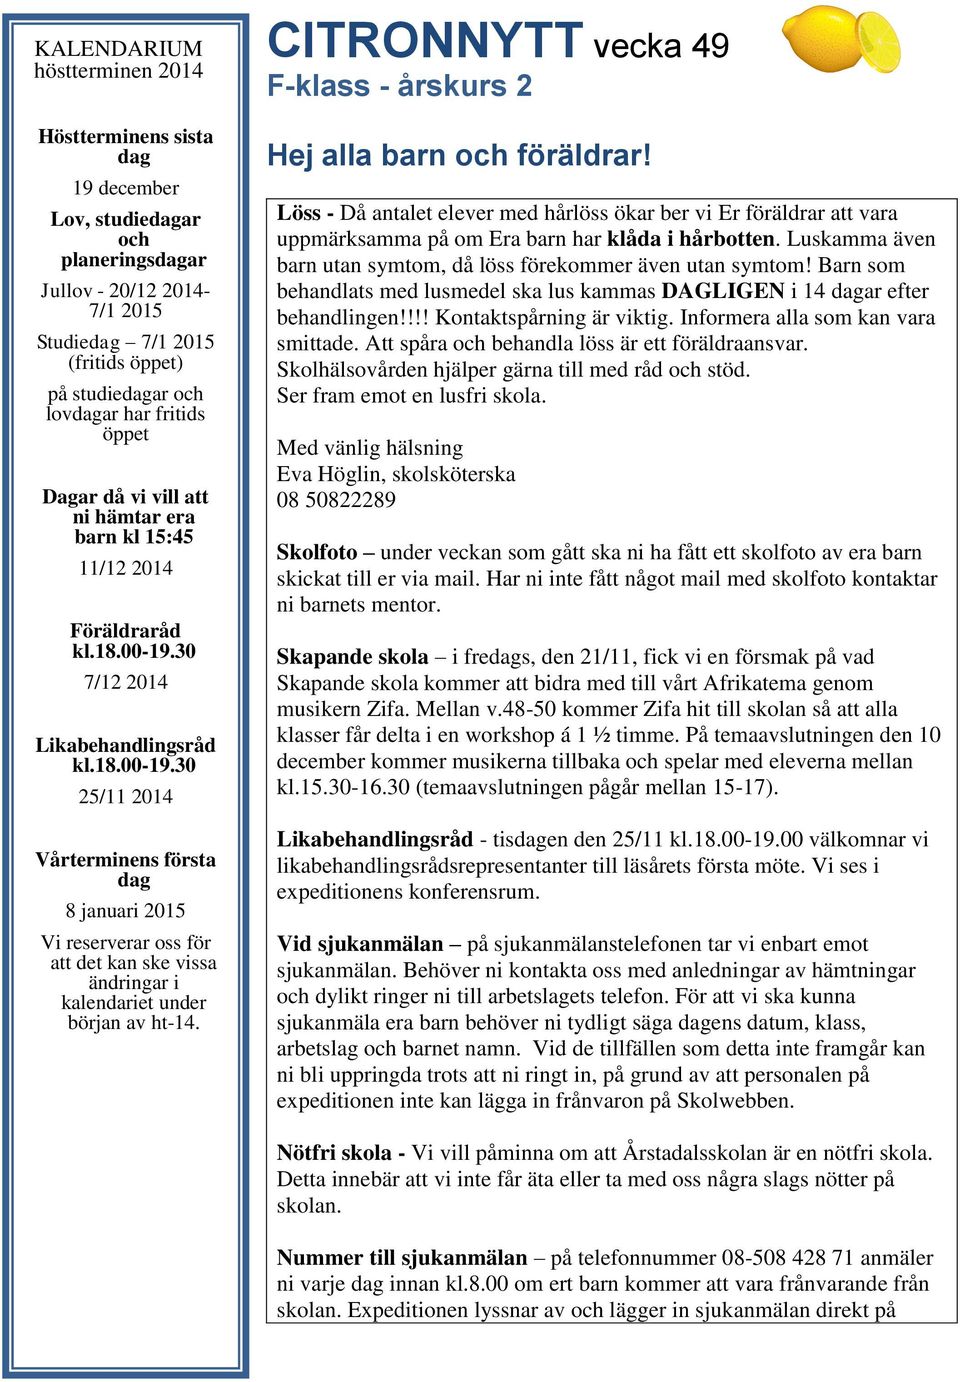 30 7/12 2014 Likabehandlingsråd kl.18.00-19.30 25/11 2014 Vårterminens första dag 8 januari 2015 Vi reserverar oss för att det kan ske vissa ändringar i kalendariet under början av ht-14.